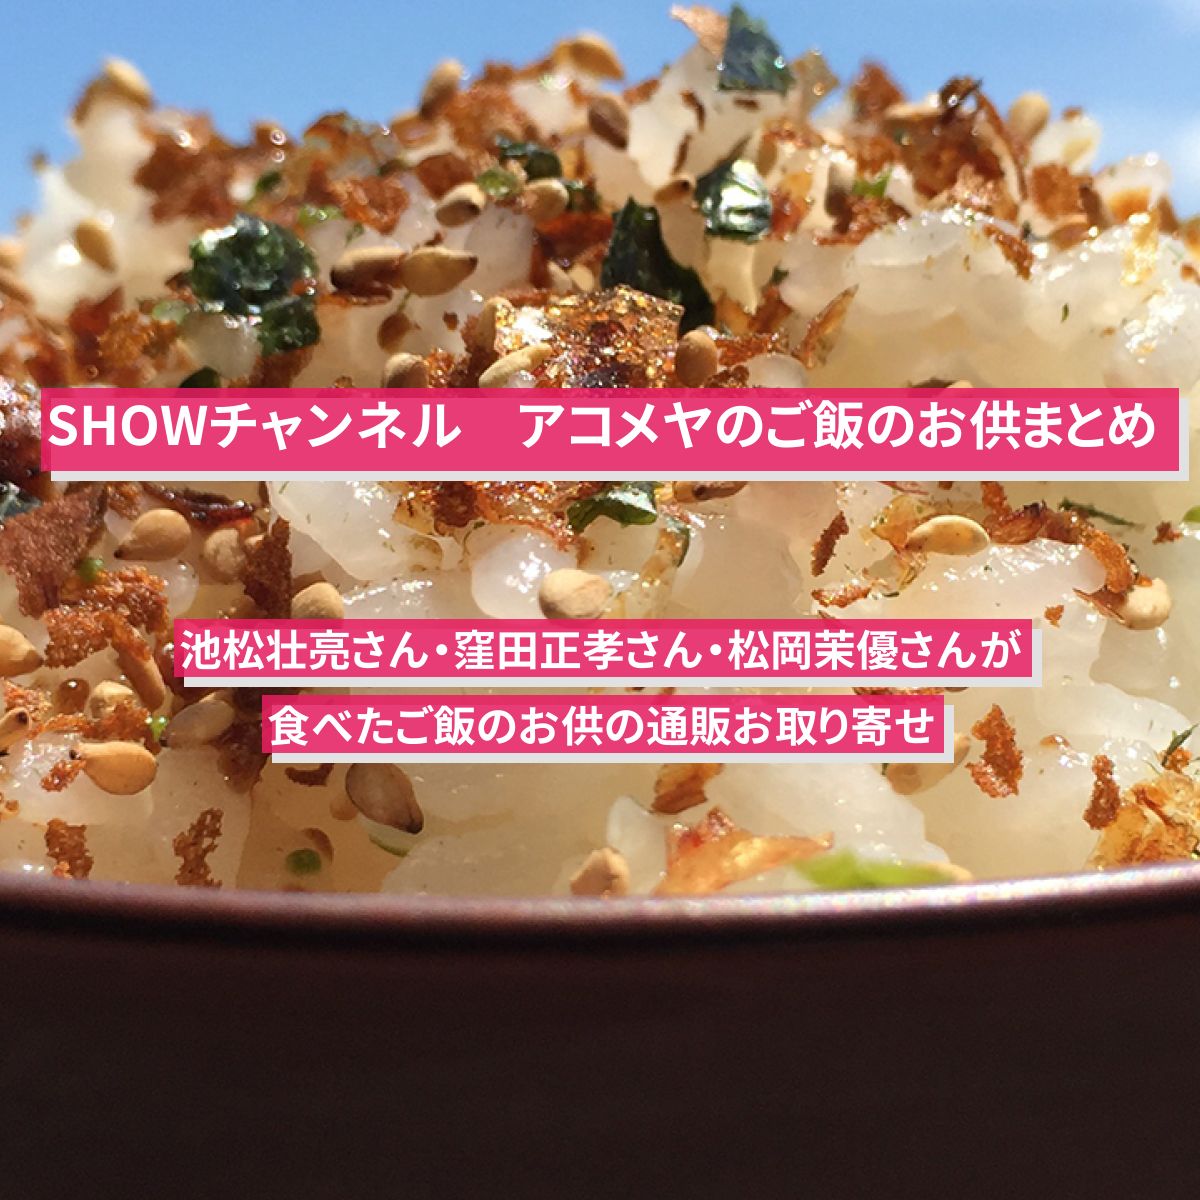 【SHOWチャンネル】アコメヤのご飯のお供まとめ・通販お取り寄せ